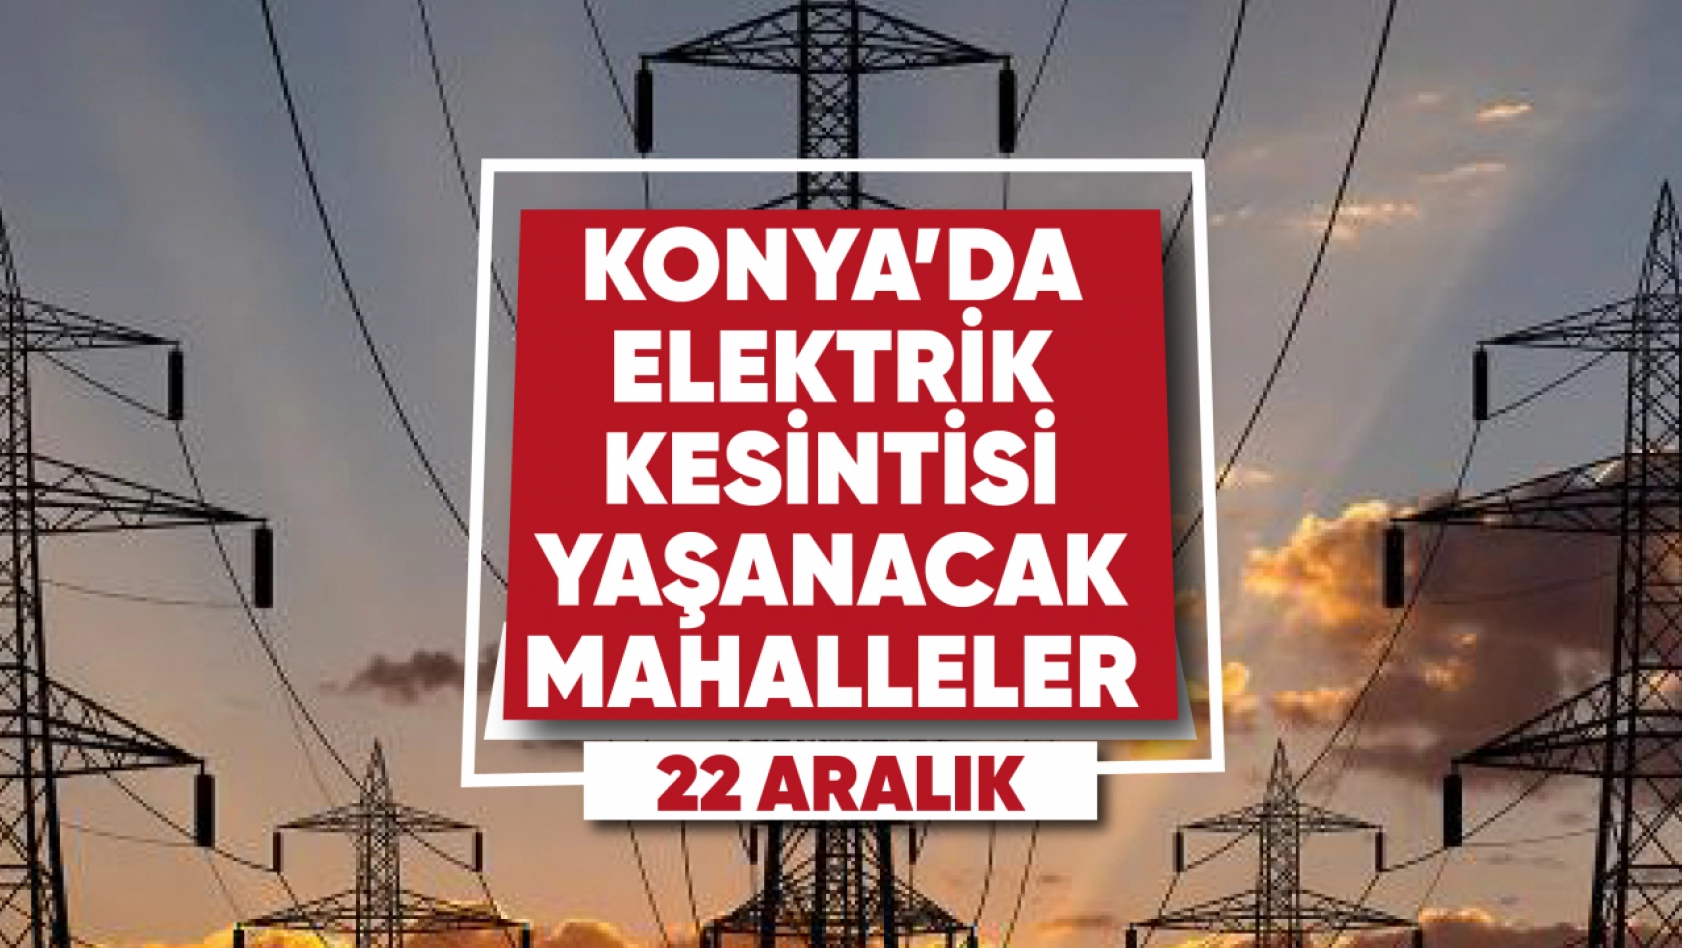 Konya'da elektrik kesintisi yaşanacak mahalle ve sokaklar (22 Aralık)